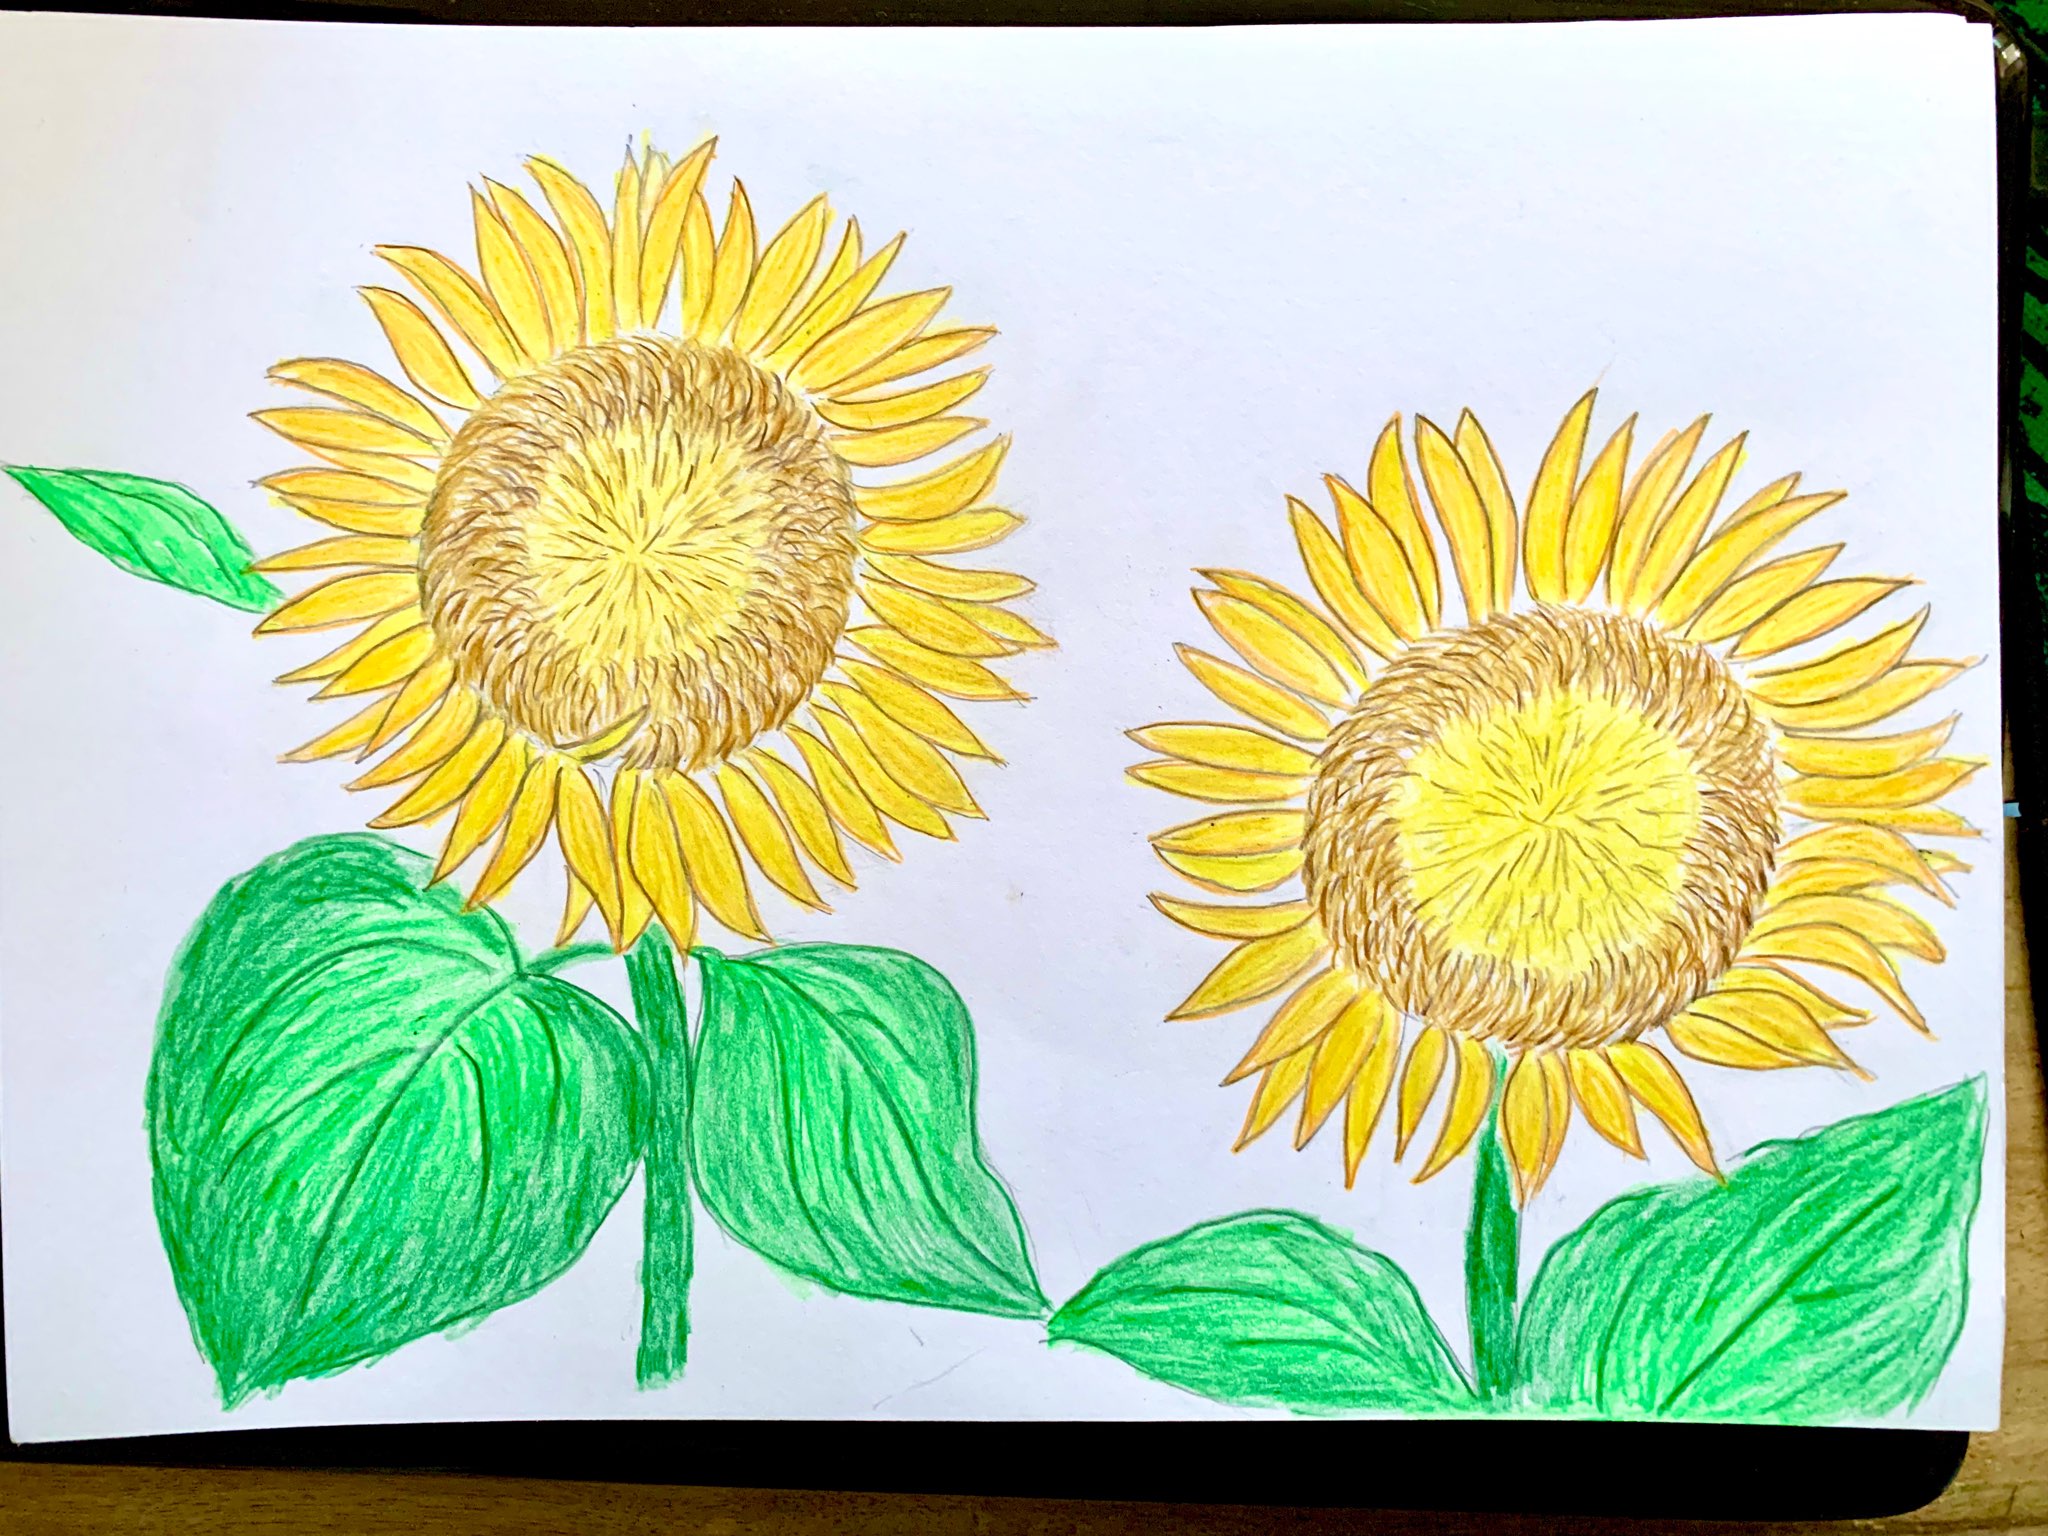 Vẽ hoa hướng dương là một trải nghiệm thú vị với bất kỳ người nghệ sĩ hay không chuyên nào. Bạn sẽ được tập trung vào việc tạo ra những điểm nhấn và sự thể hiện động lực của hoa hướng dương một cách tự do và sáng tạo.